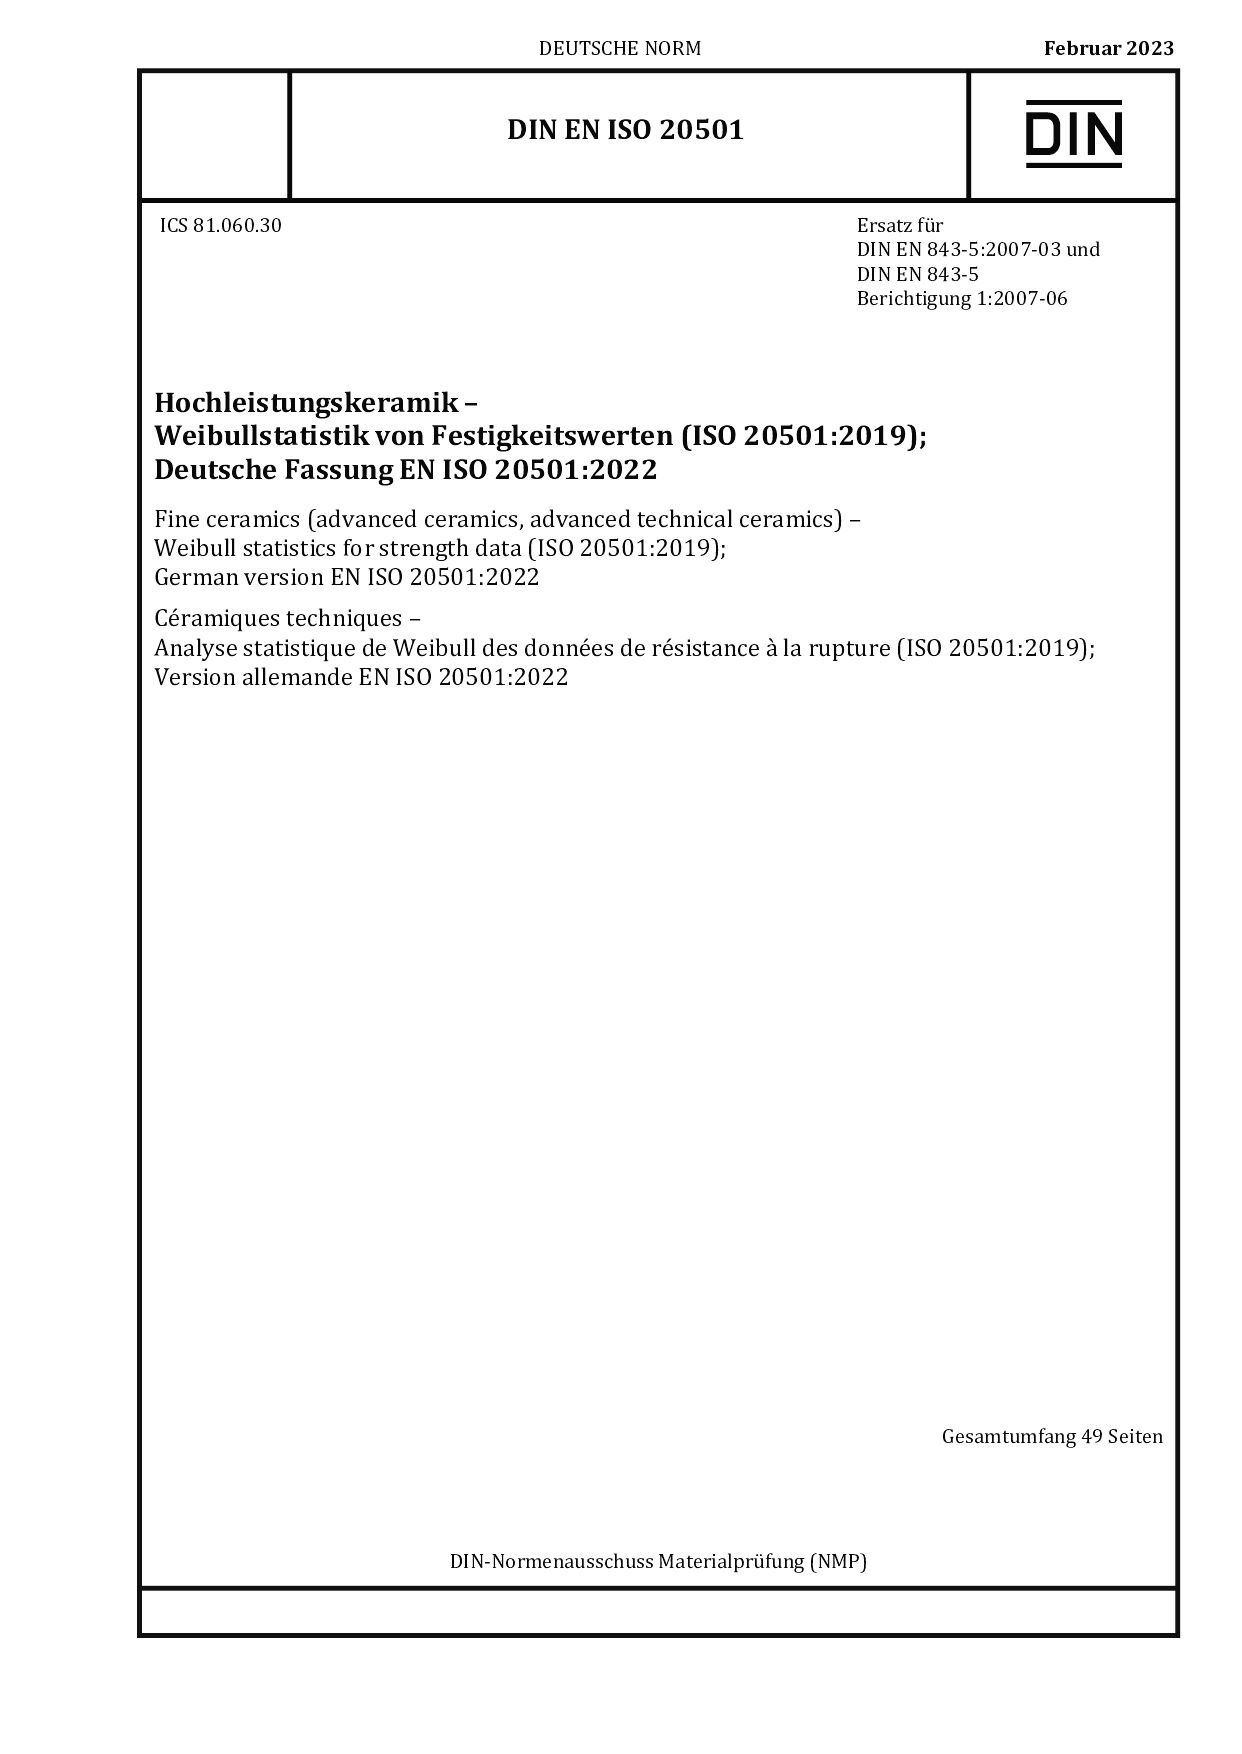 DIN EN ISO 20501:2023封面图